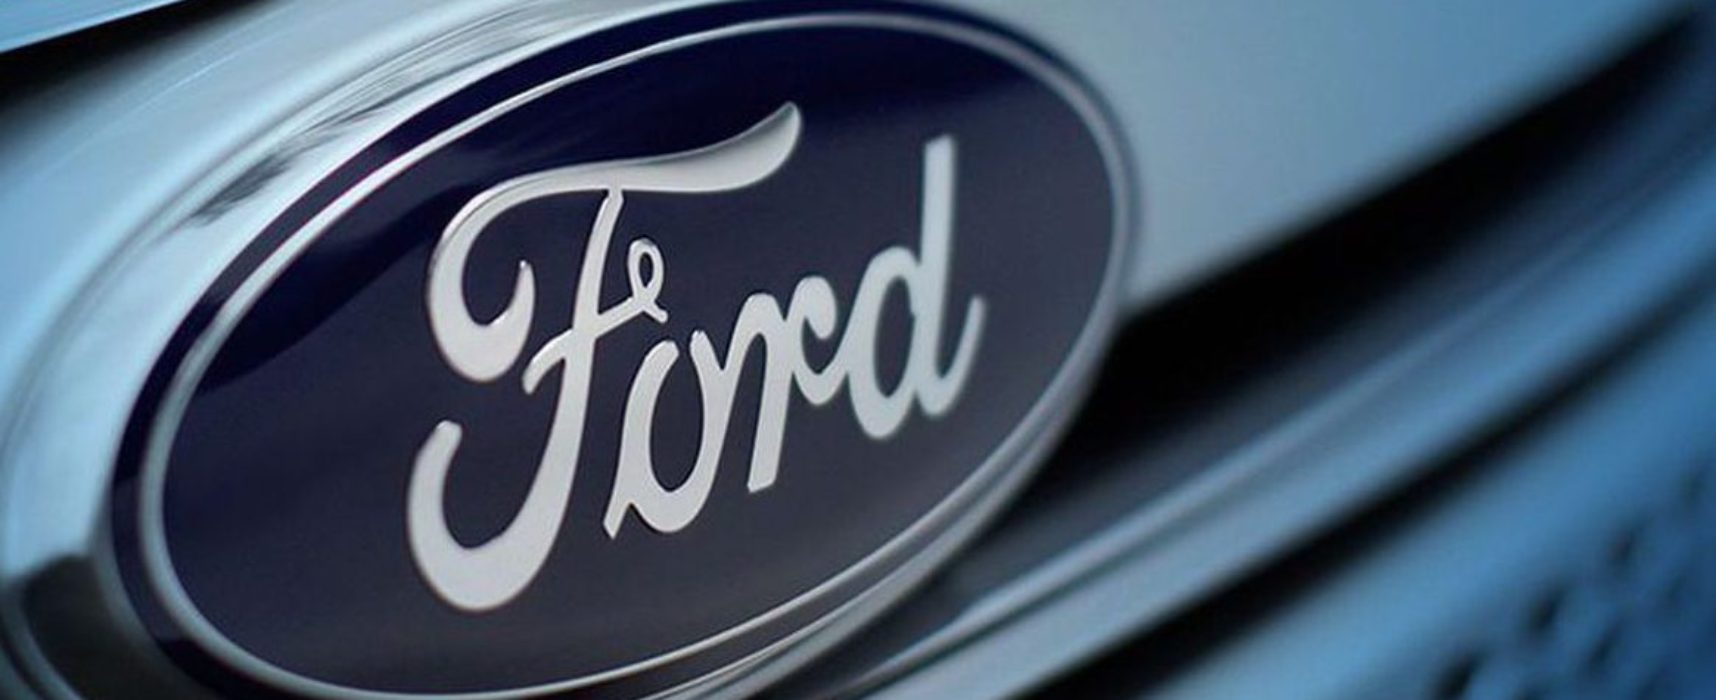 Ford encerra sua produção no Brasil